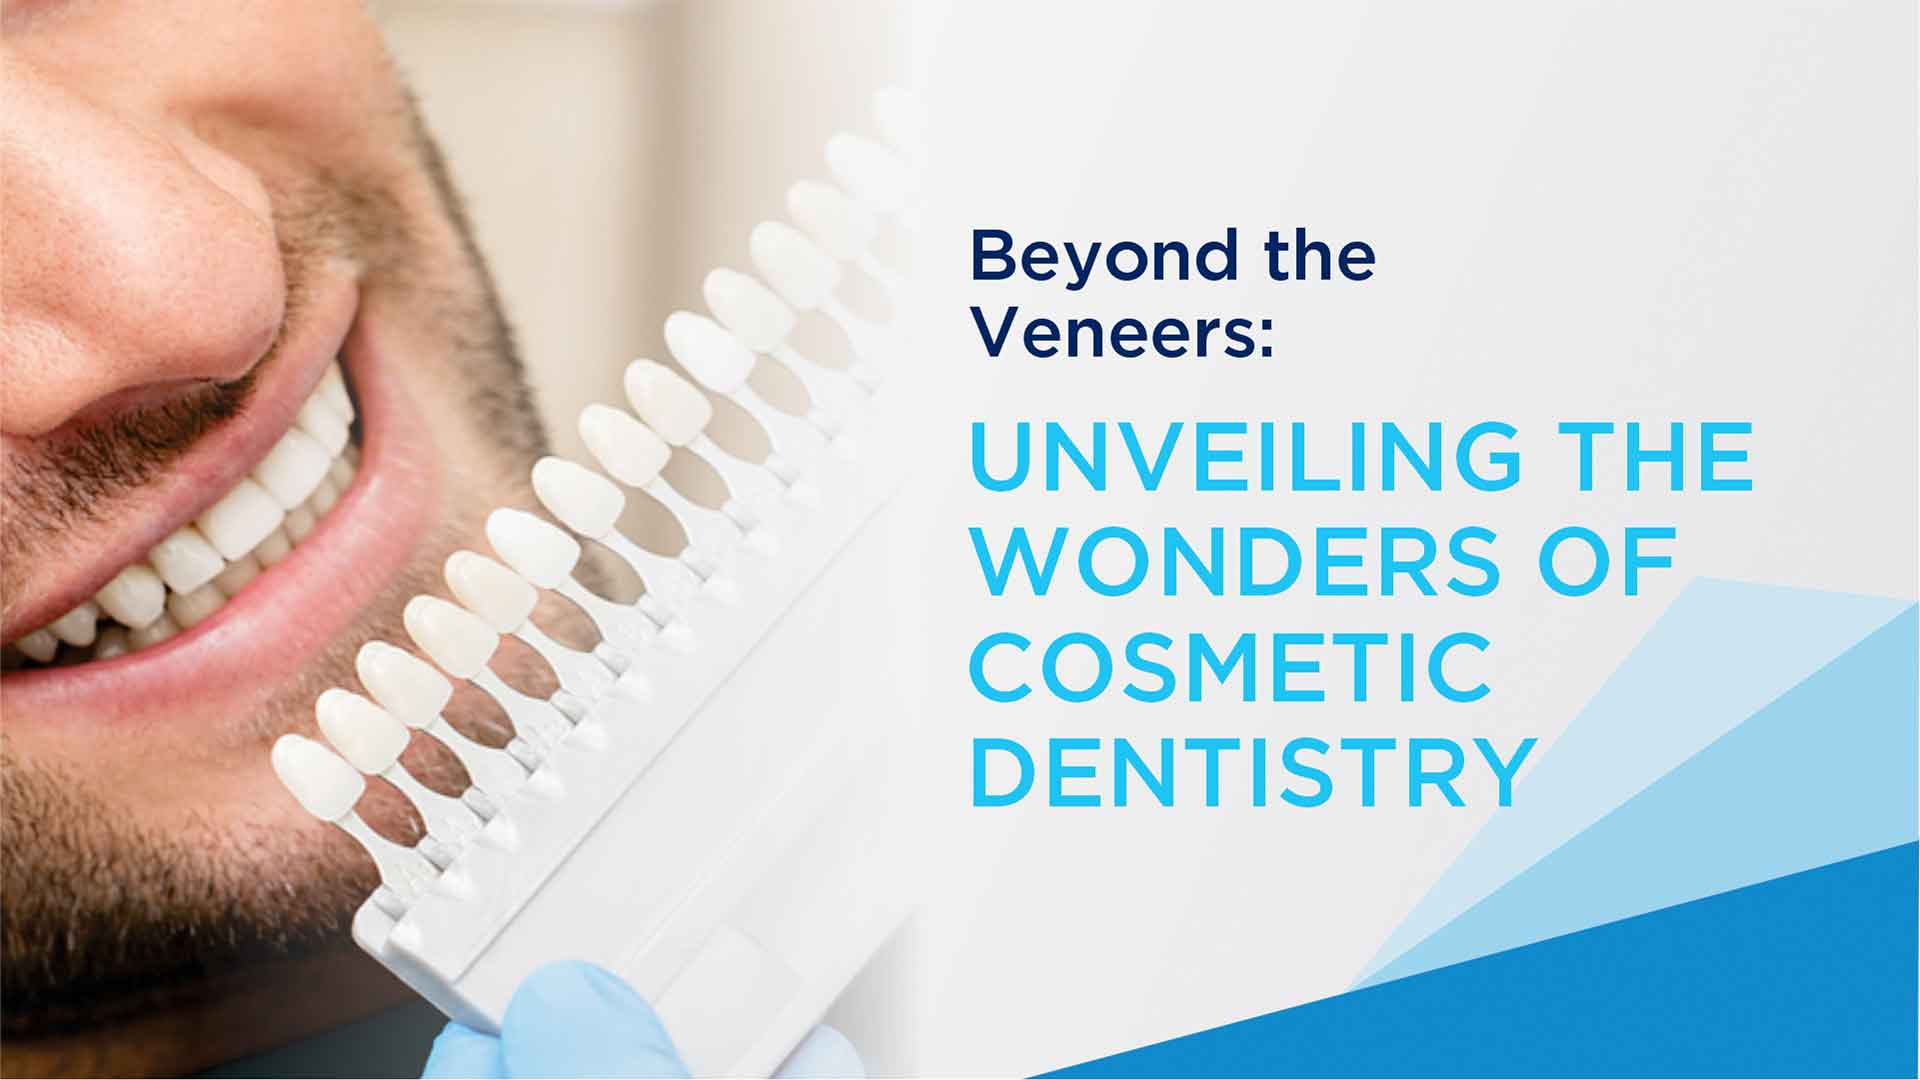 Beyond the Veneers: Unveiling the Wonders of Cosmetic Dentistry